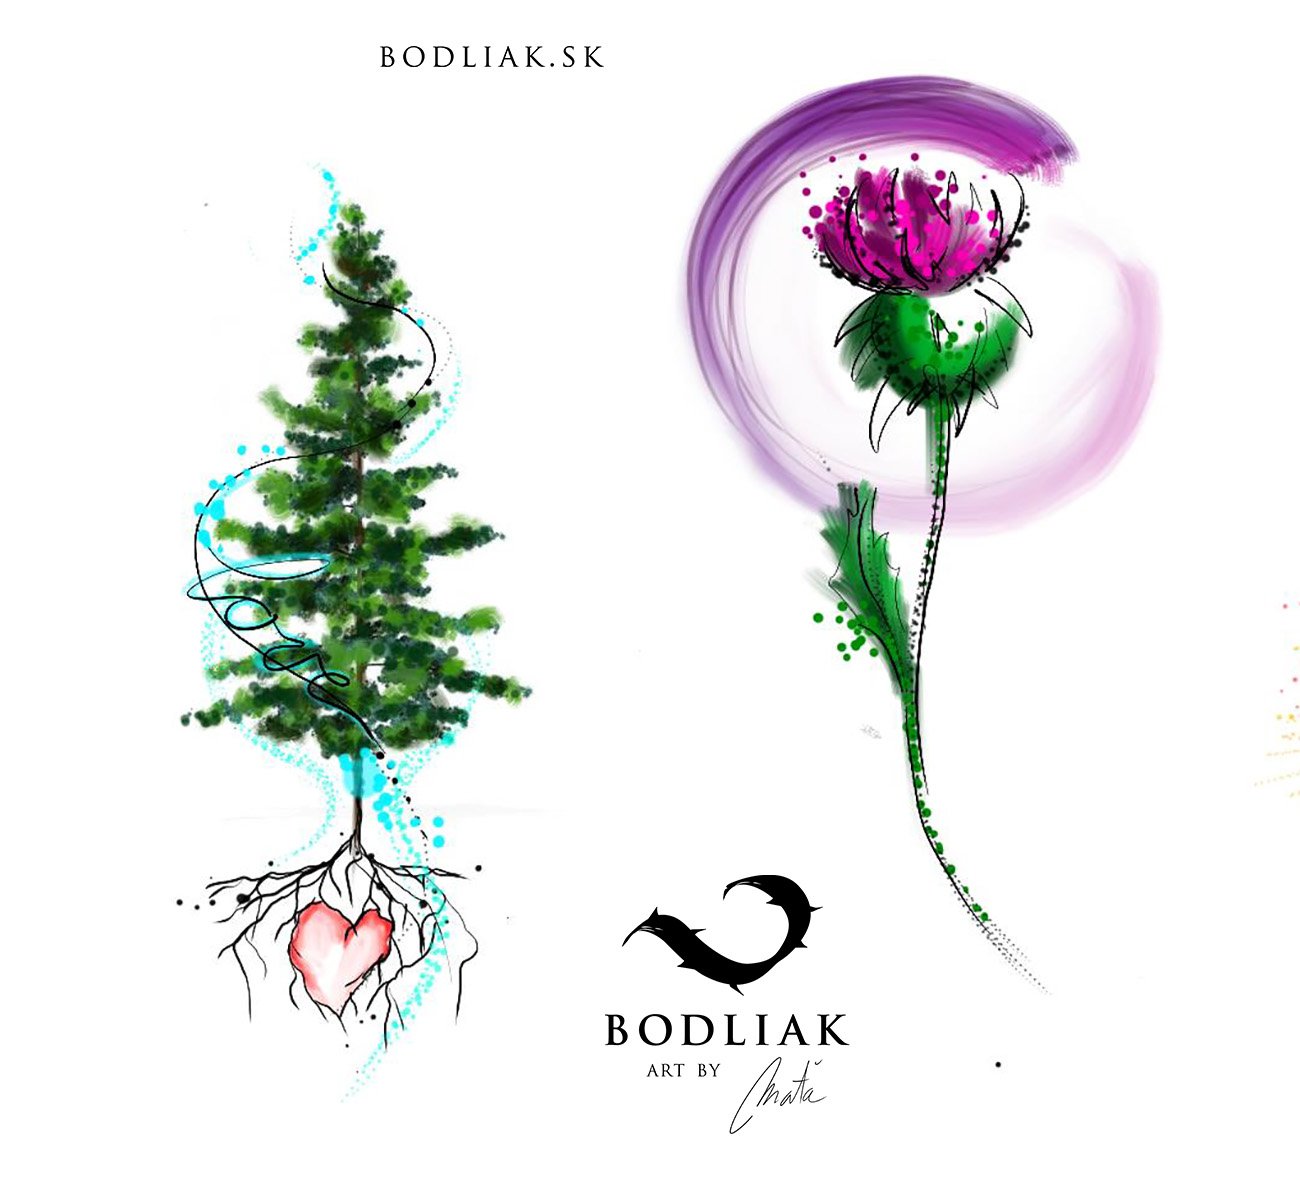  bodliak-bodliaktattoo-volny-motiv-tetovanie-tattoo-colourtattoo-design-mata-priroda-nature-thistle-tree-heart-strom 